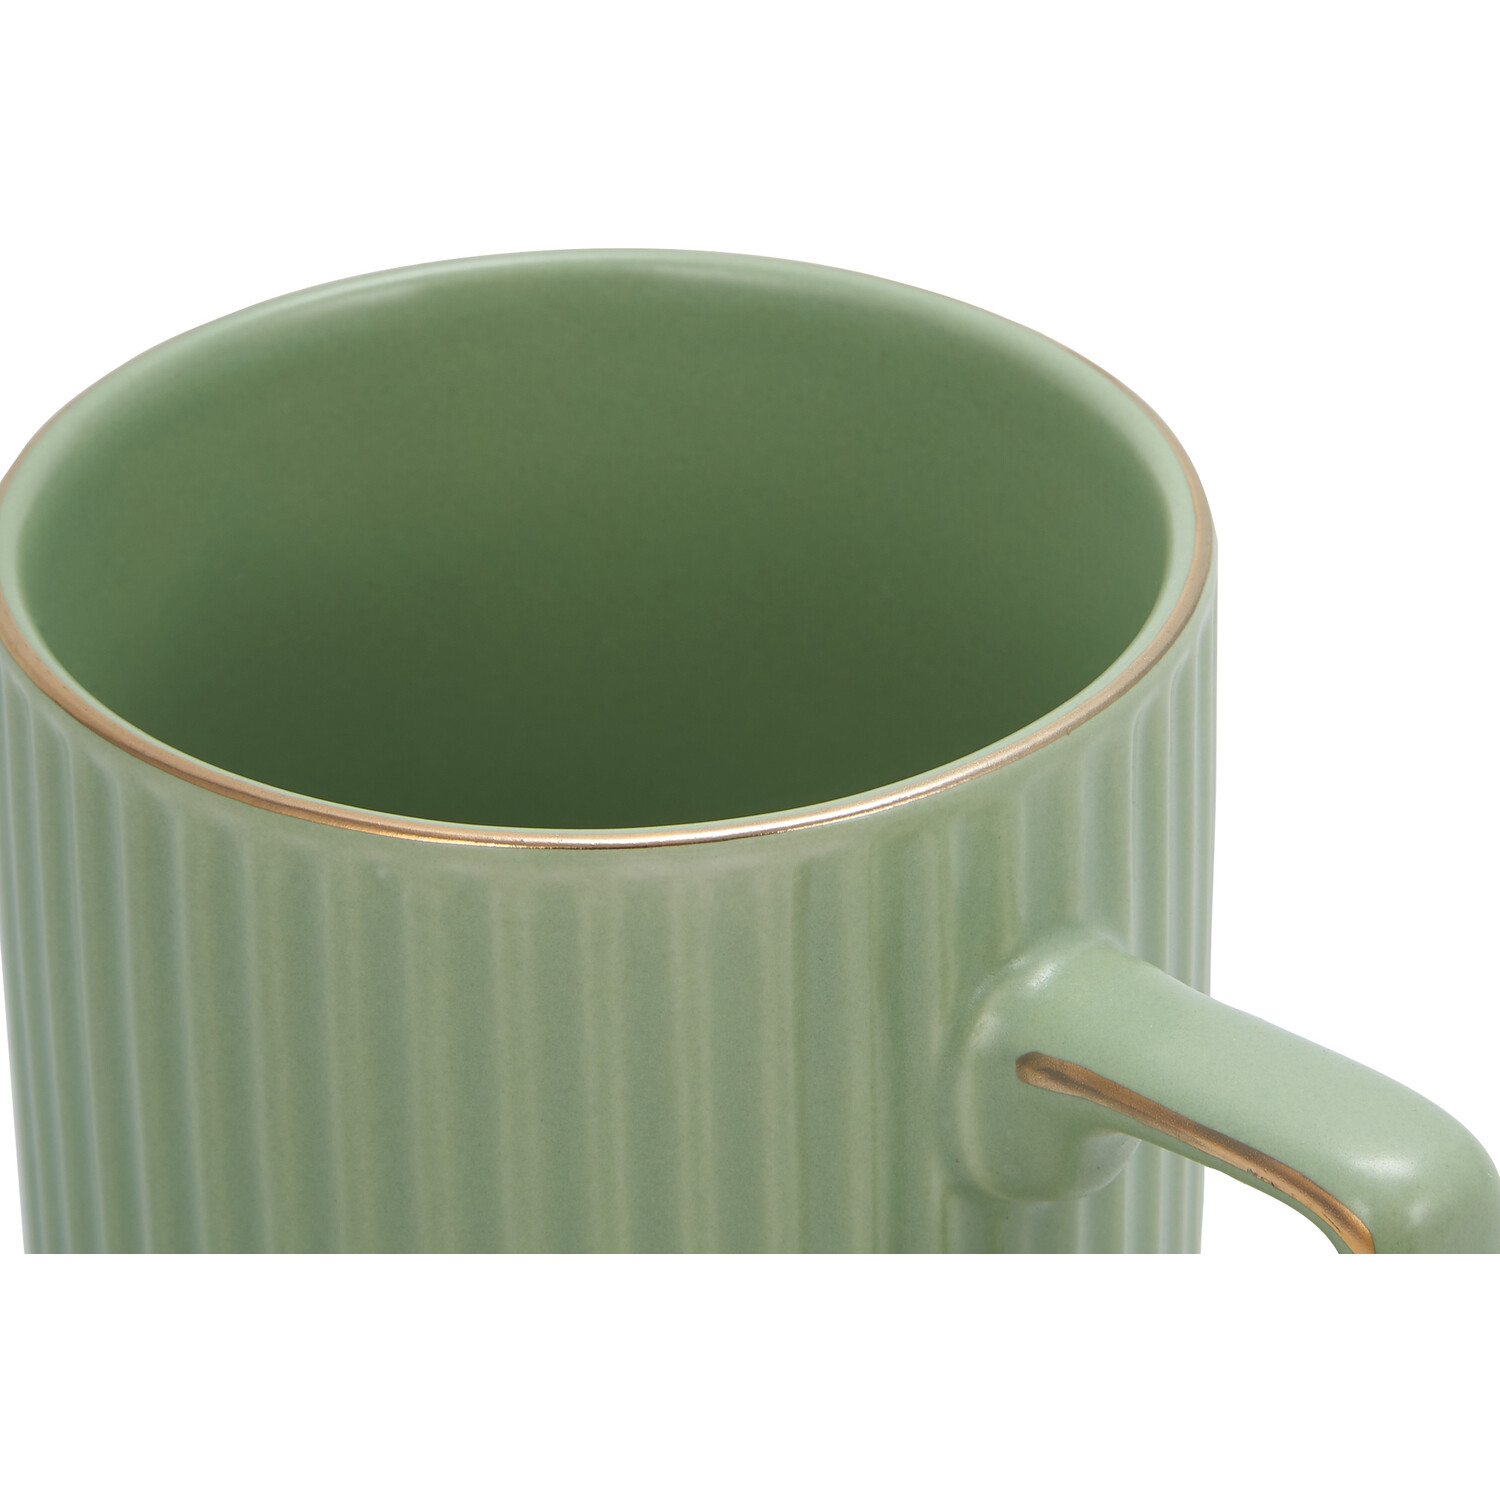 Green & Gold Mug - Green Image 3